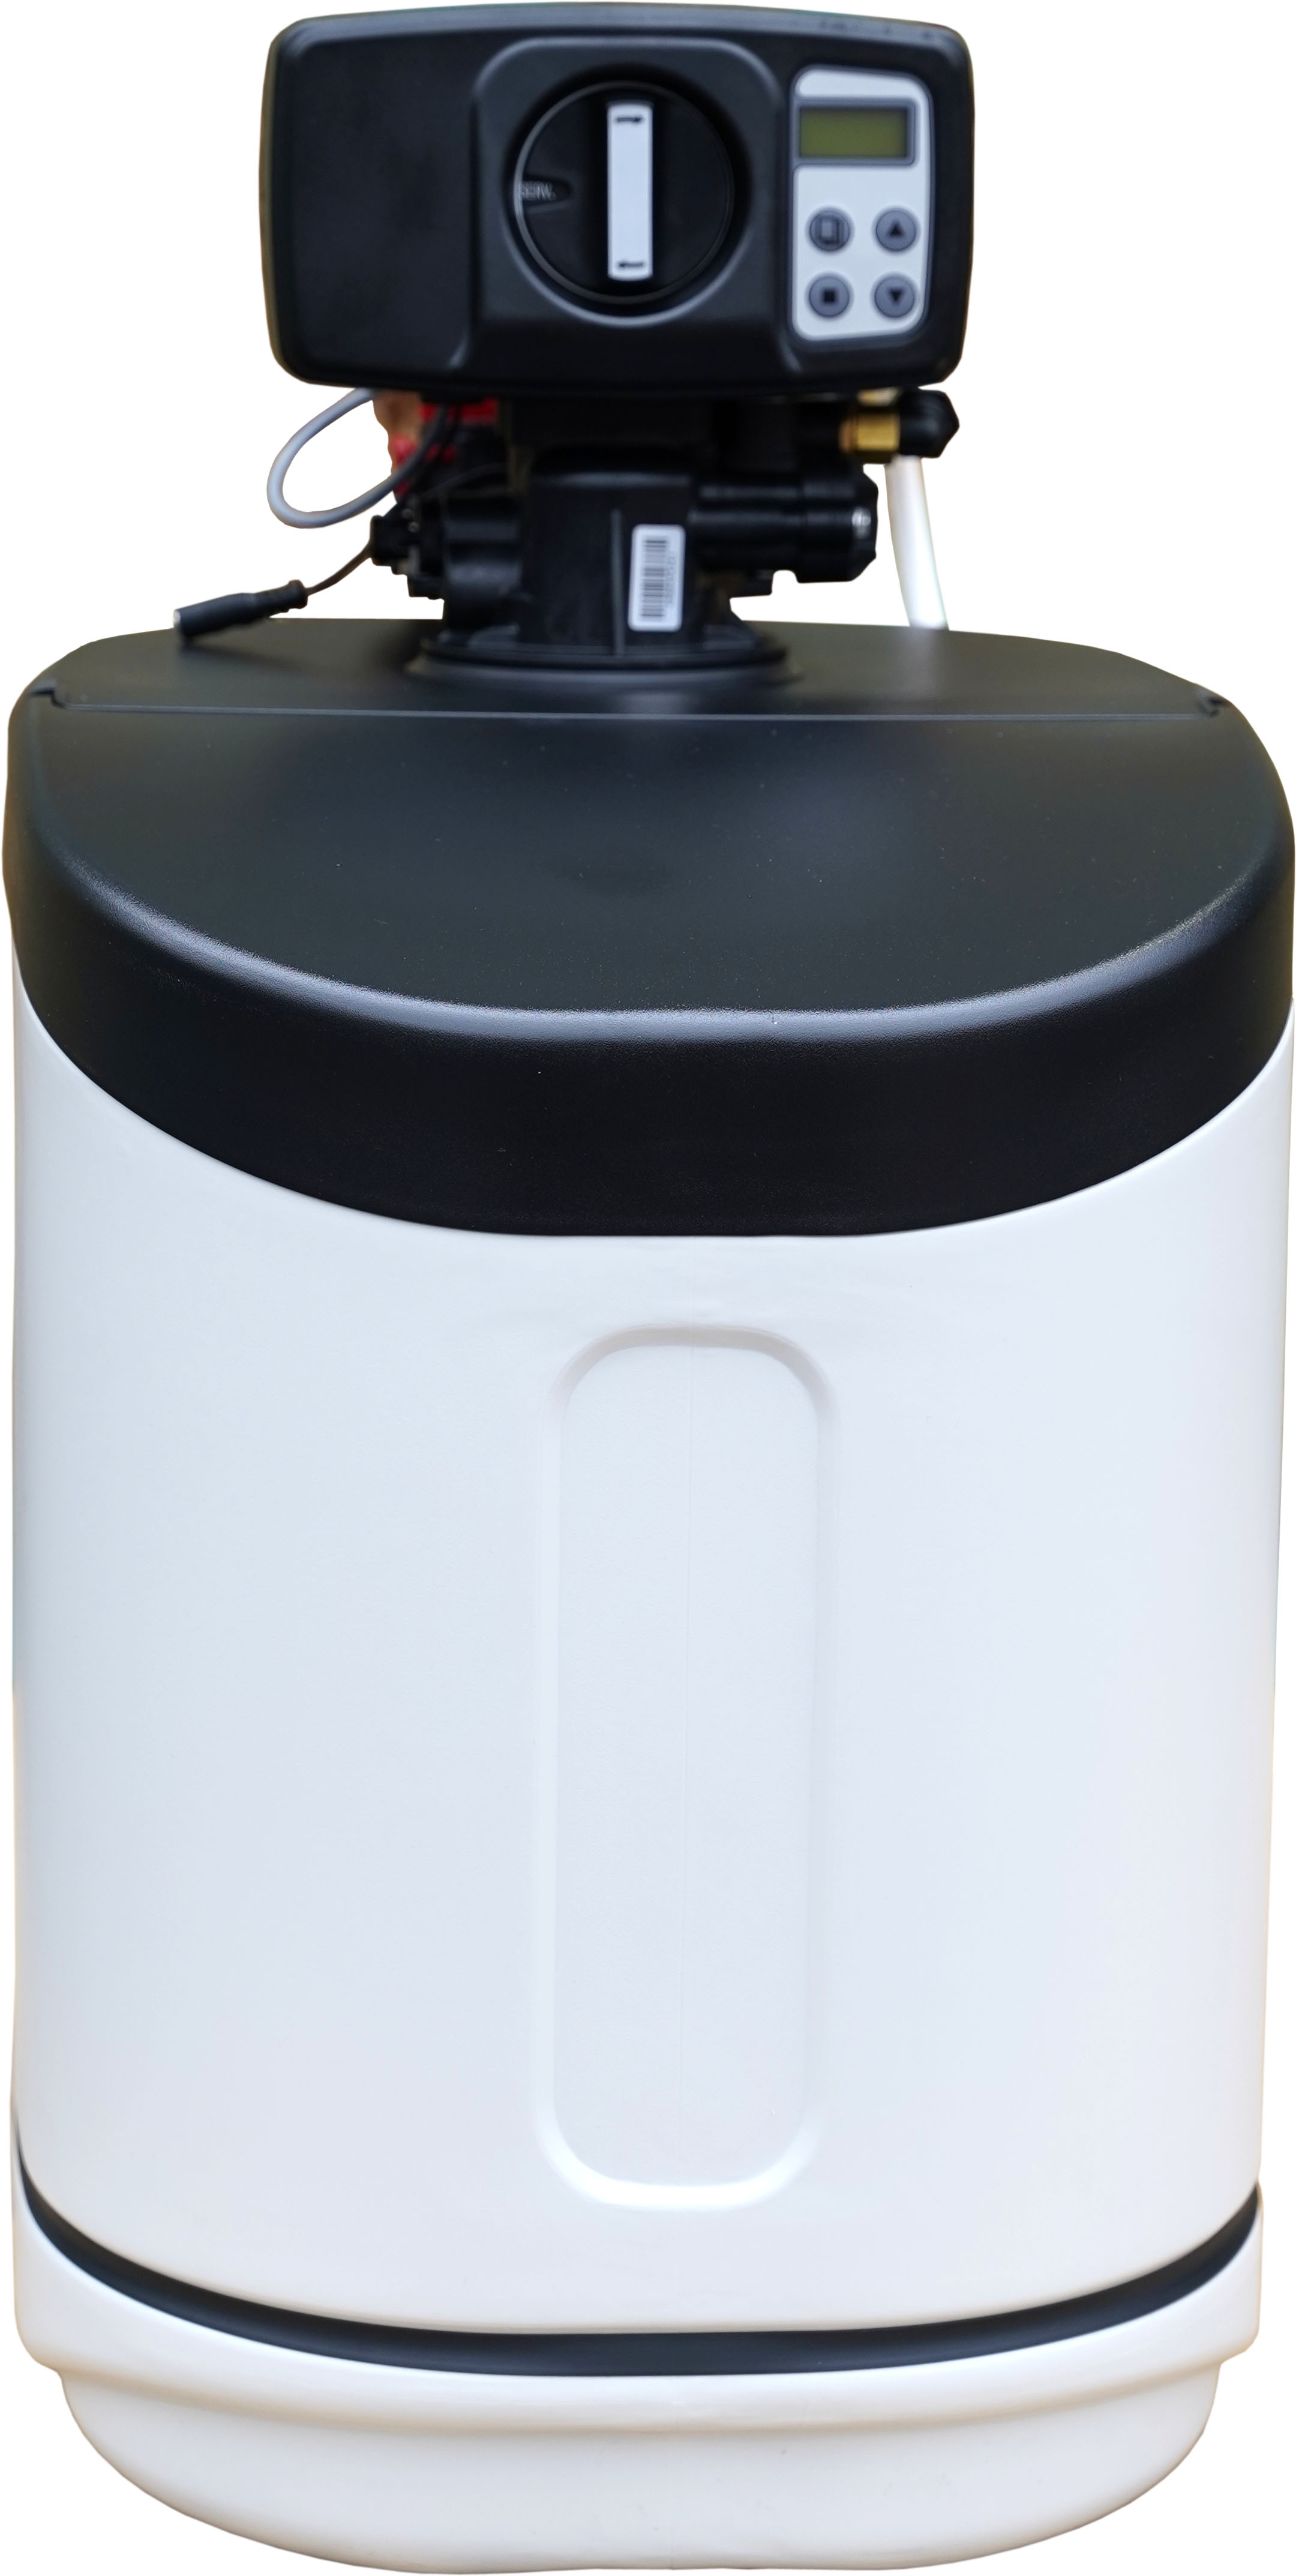 Фильтр для очистки воды от марганца Fjord Master FM-1017 кабинет (комплексная очистка)